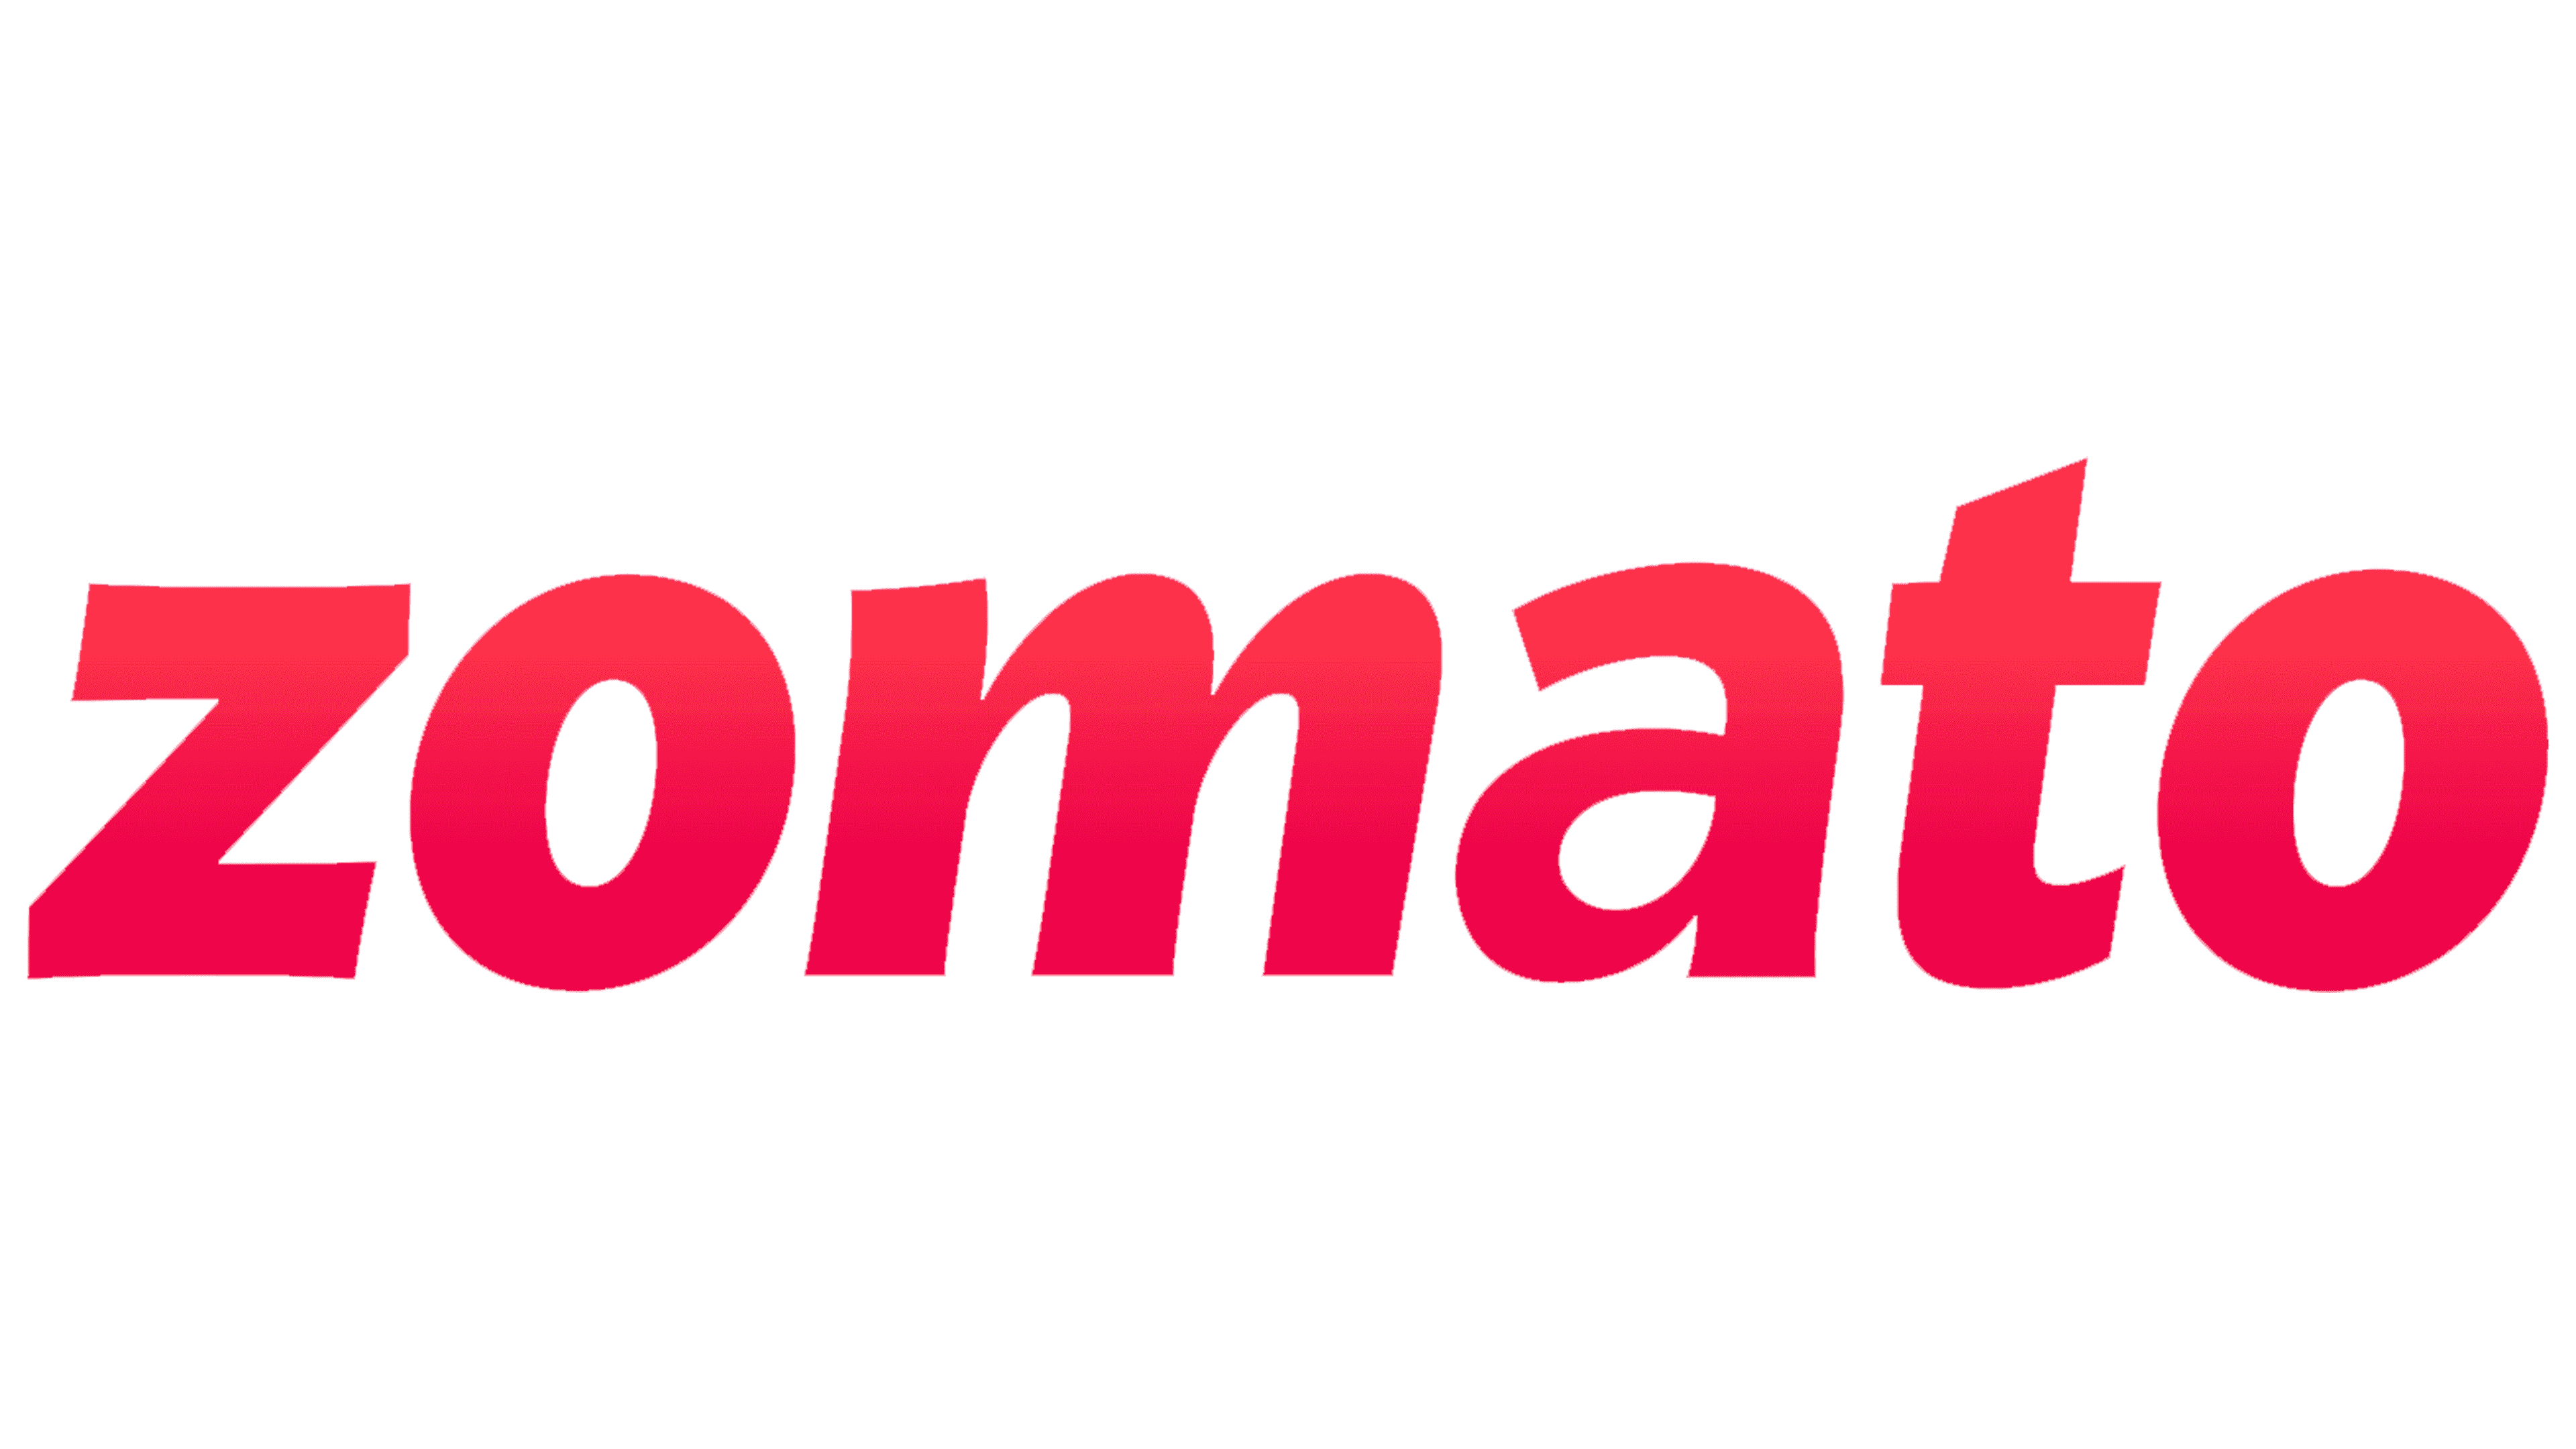 Zomato-Logo